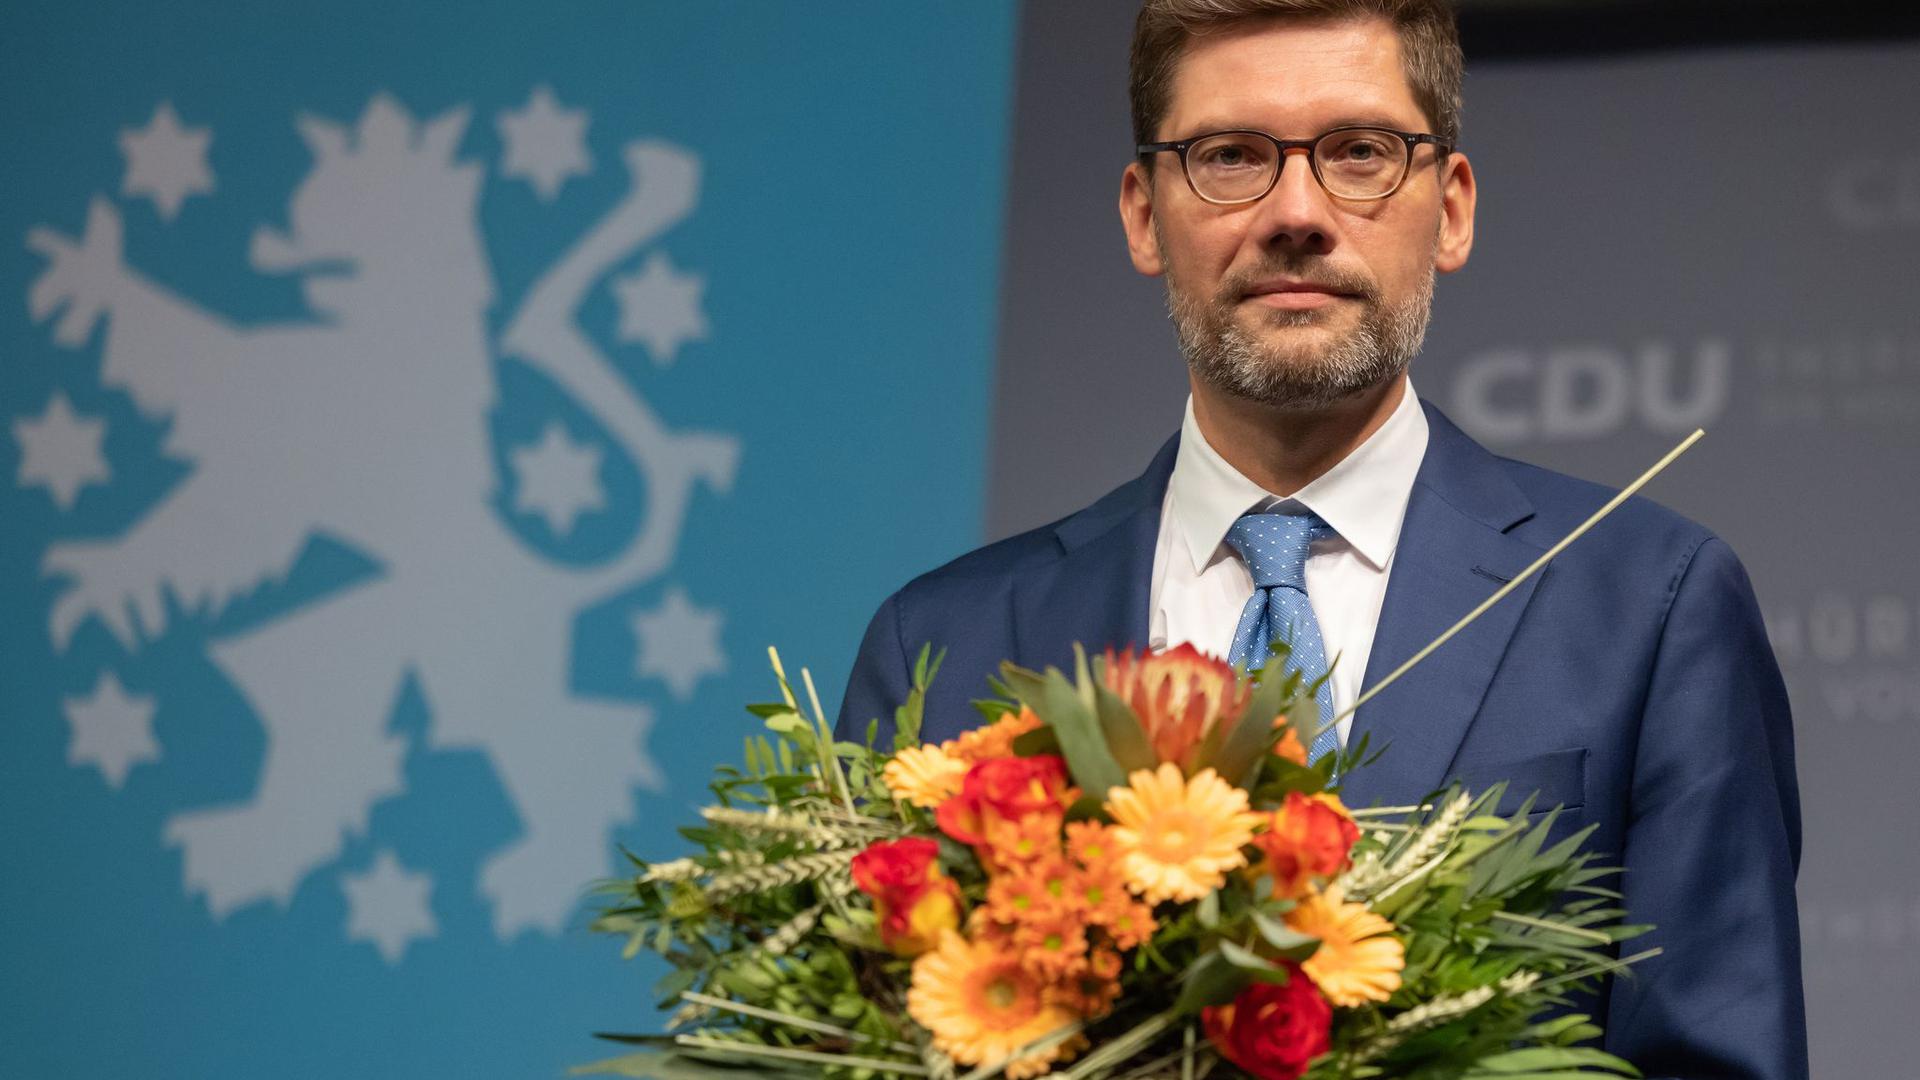 Der frühere Ost-Beauftragte der Bundesregierung, Christian Hirte, ist neuer Landesvorsitzender der Thüringer CDU. Der 44-Jährige wurde  mit 67,6 Prozent der Stimmen gewählt.